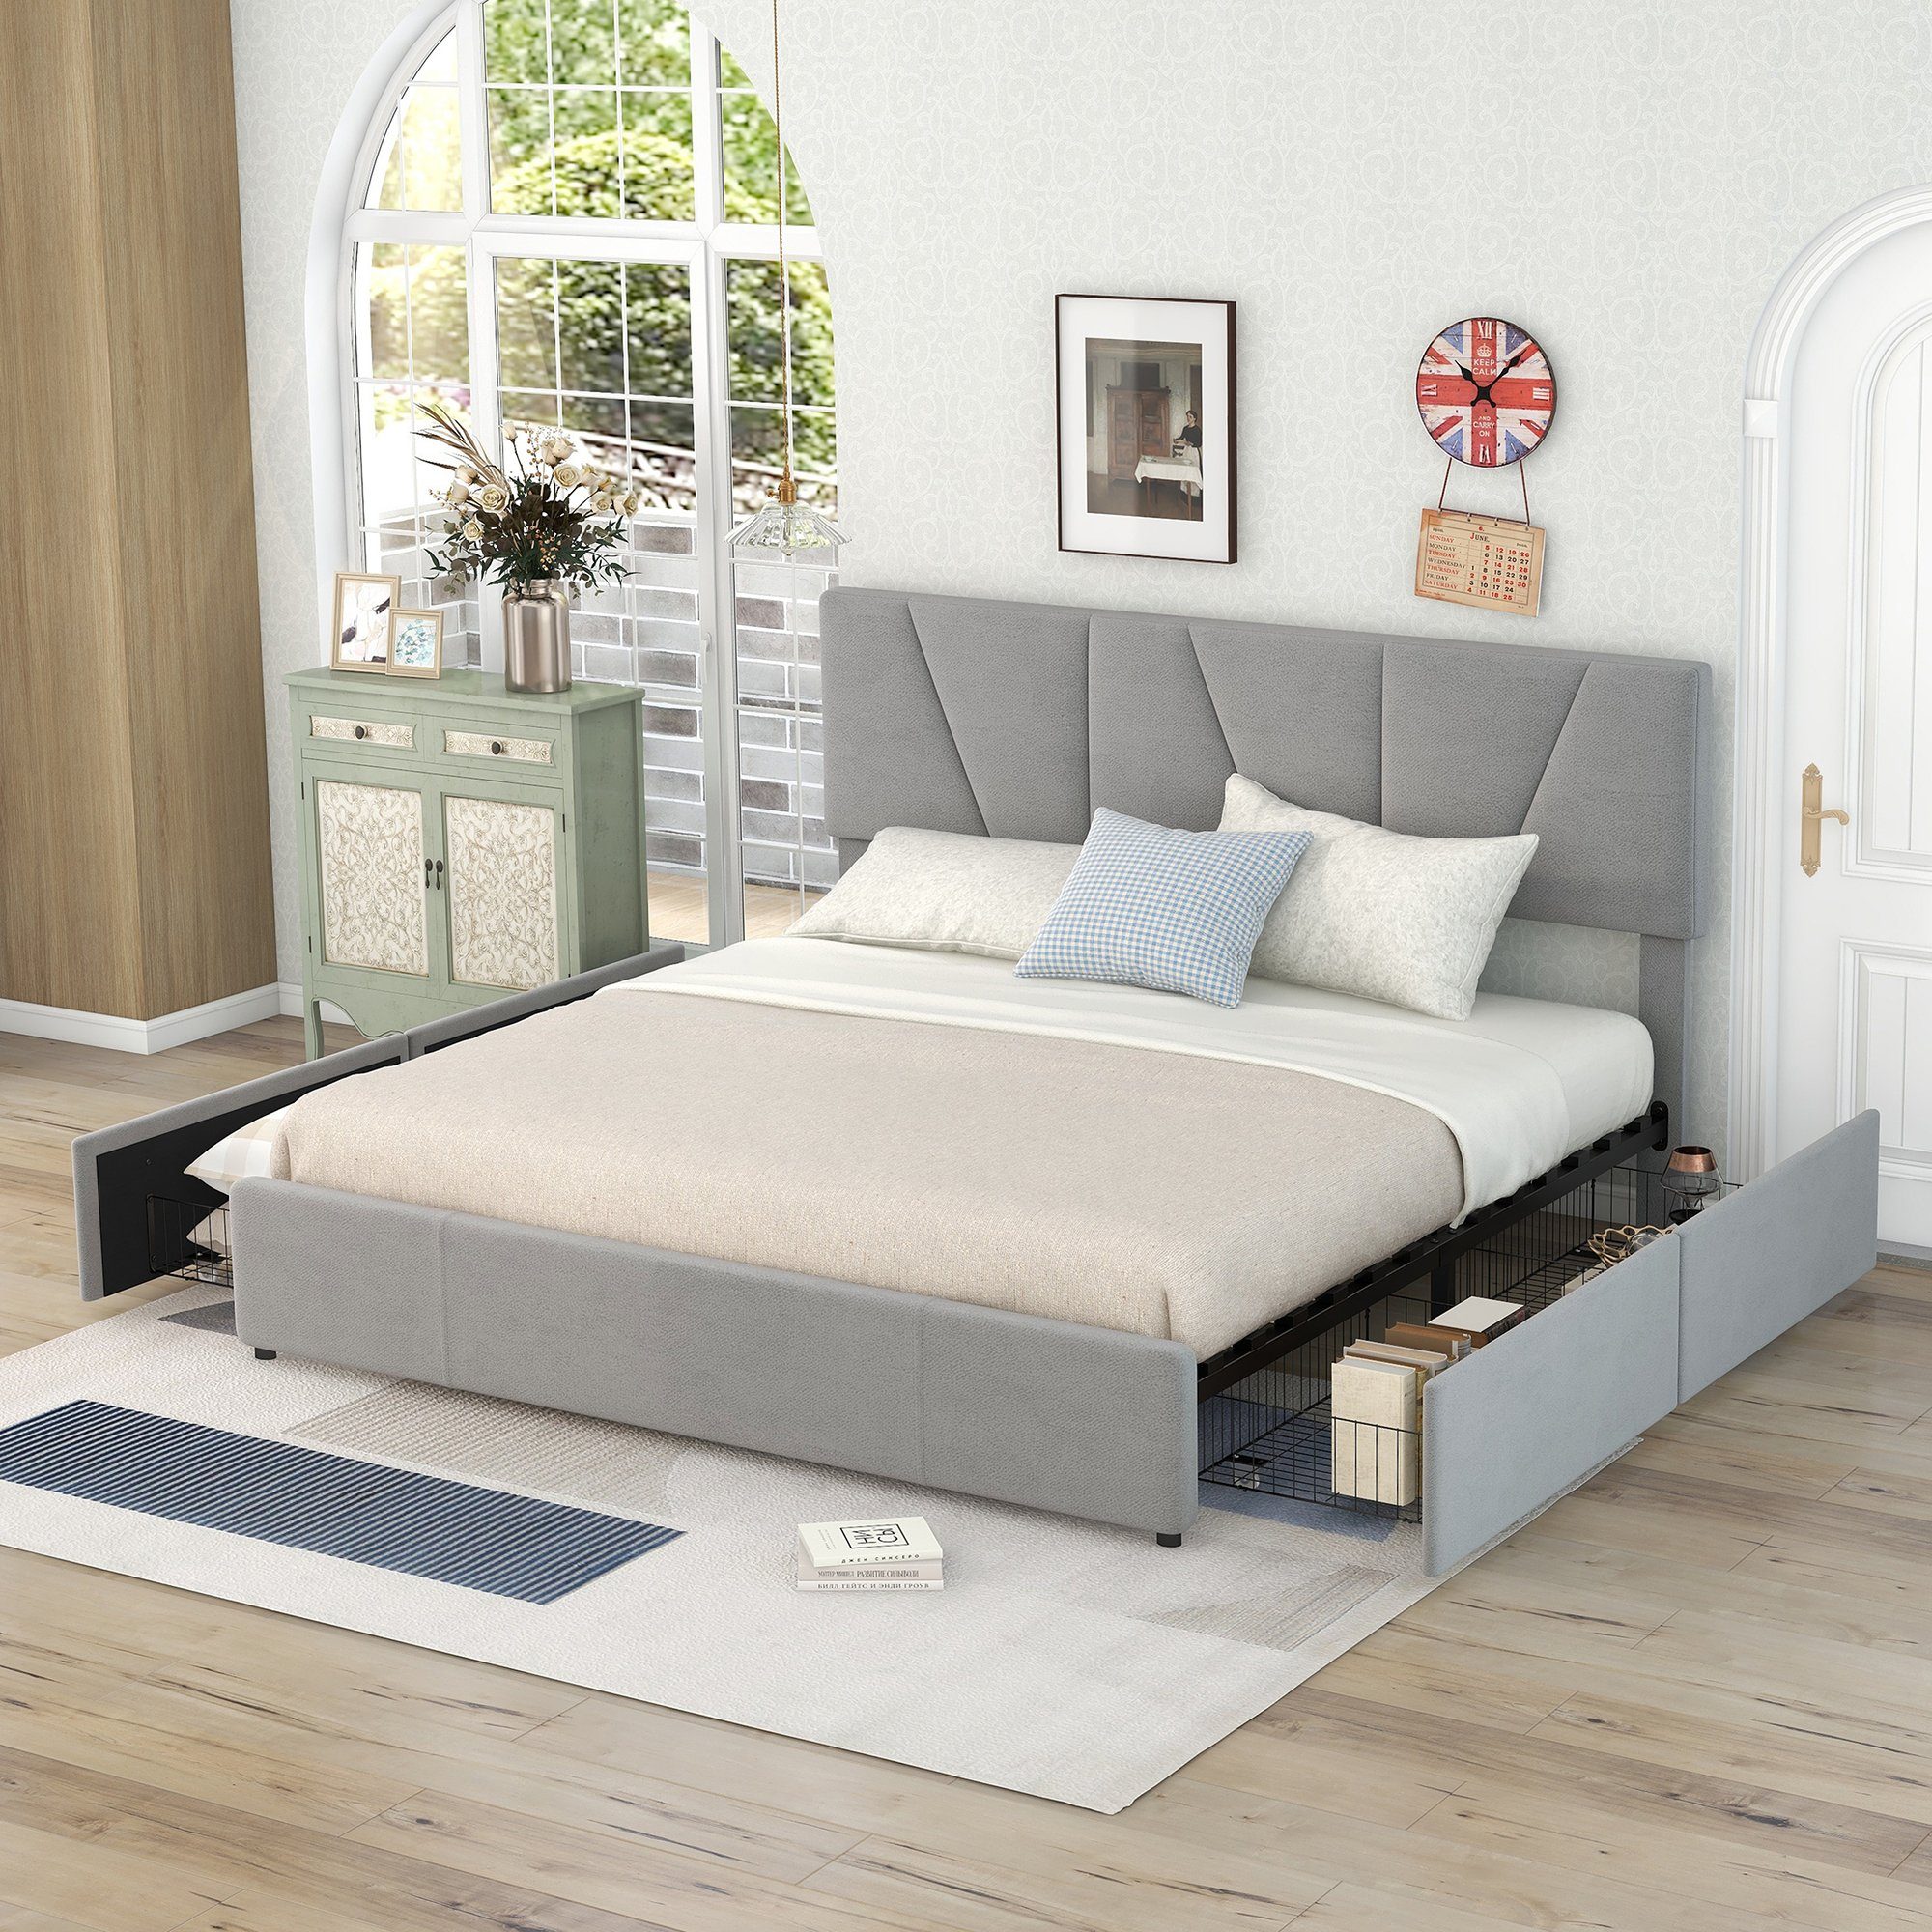 Celya Polsterbett Doppelbett Bettgestell 160x200cm Kingsize Polster  Plattform Bett, mit vier Schubladen auf zwei Seiten, Verstellbares Kopfteil